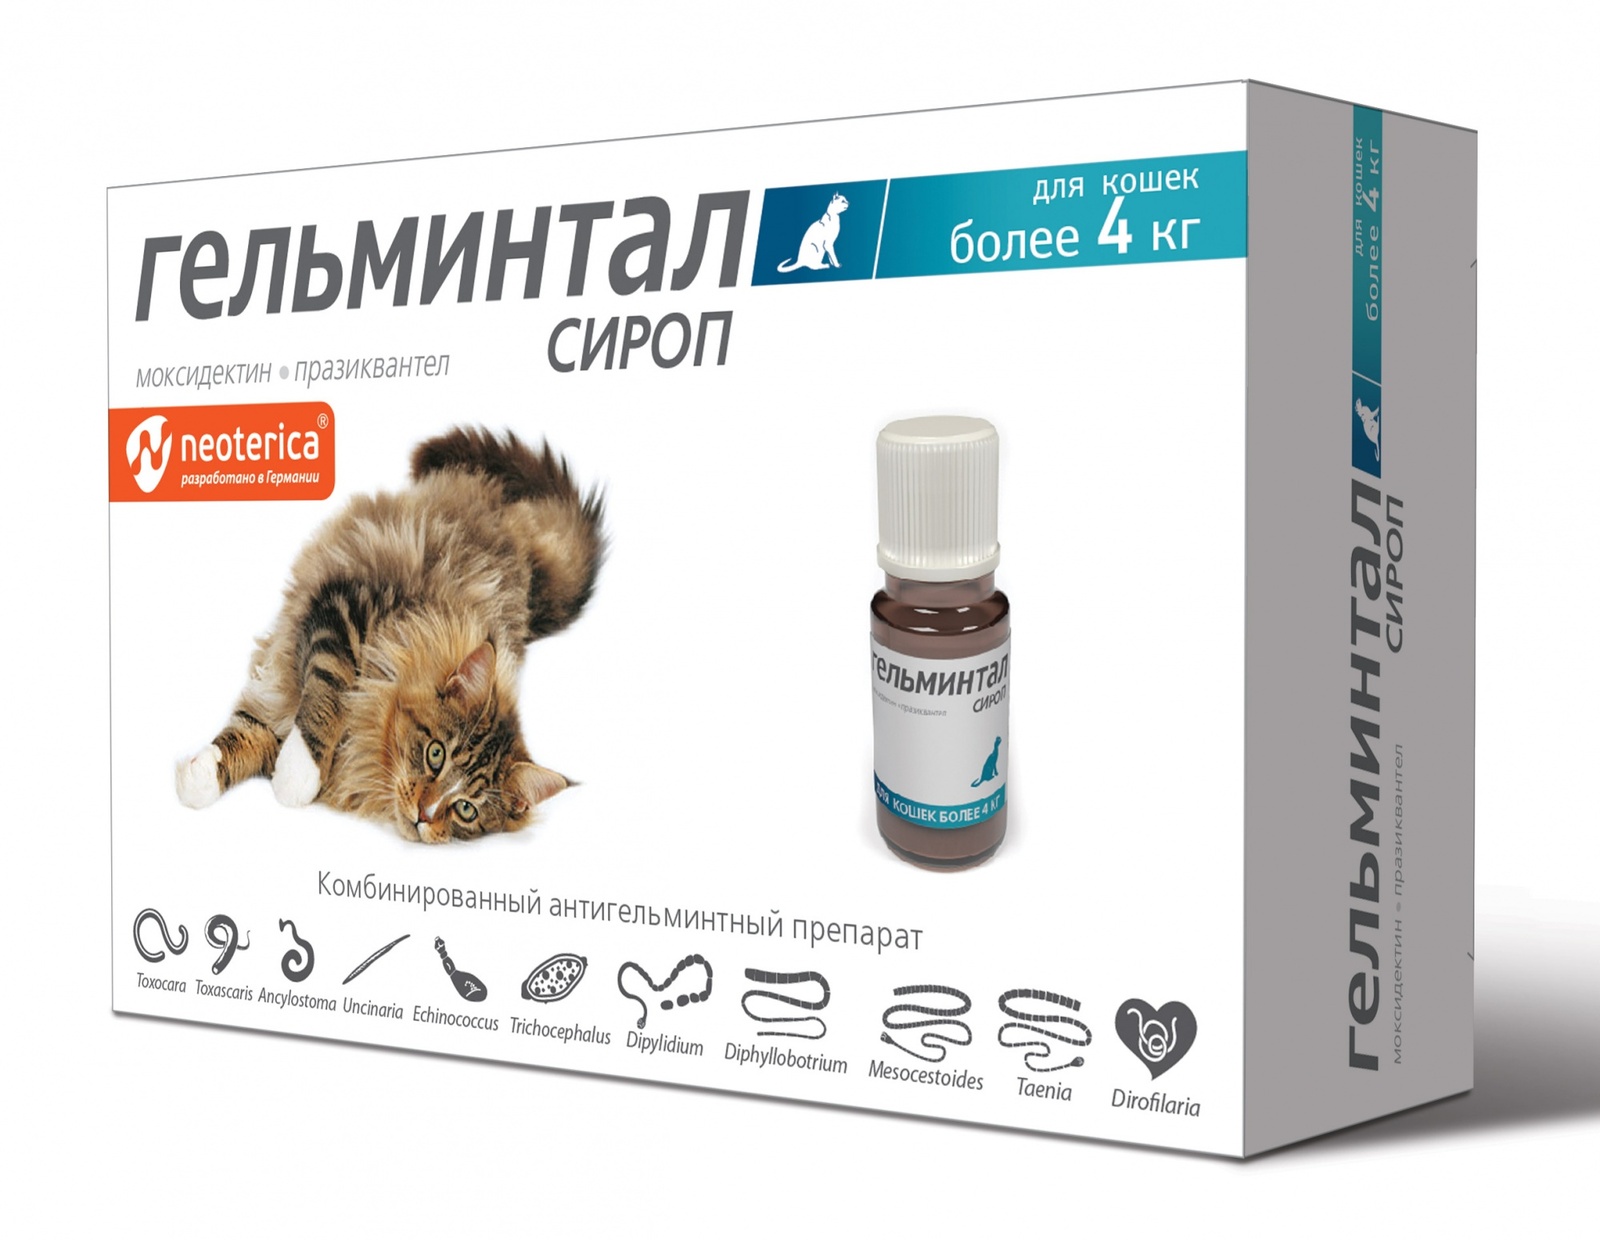 Гельминтал Гельминтал сироп от глистов, для кошек более 4 кг, 5 мл (60 г) гельминтал гельминтал сироп от глистов для собак более 10 кг 10 мл 60 г